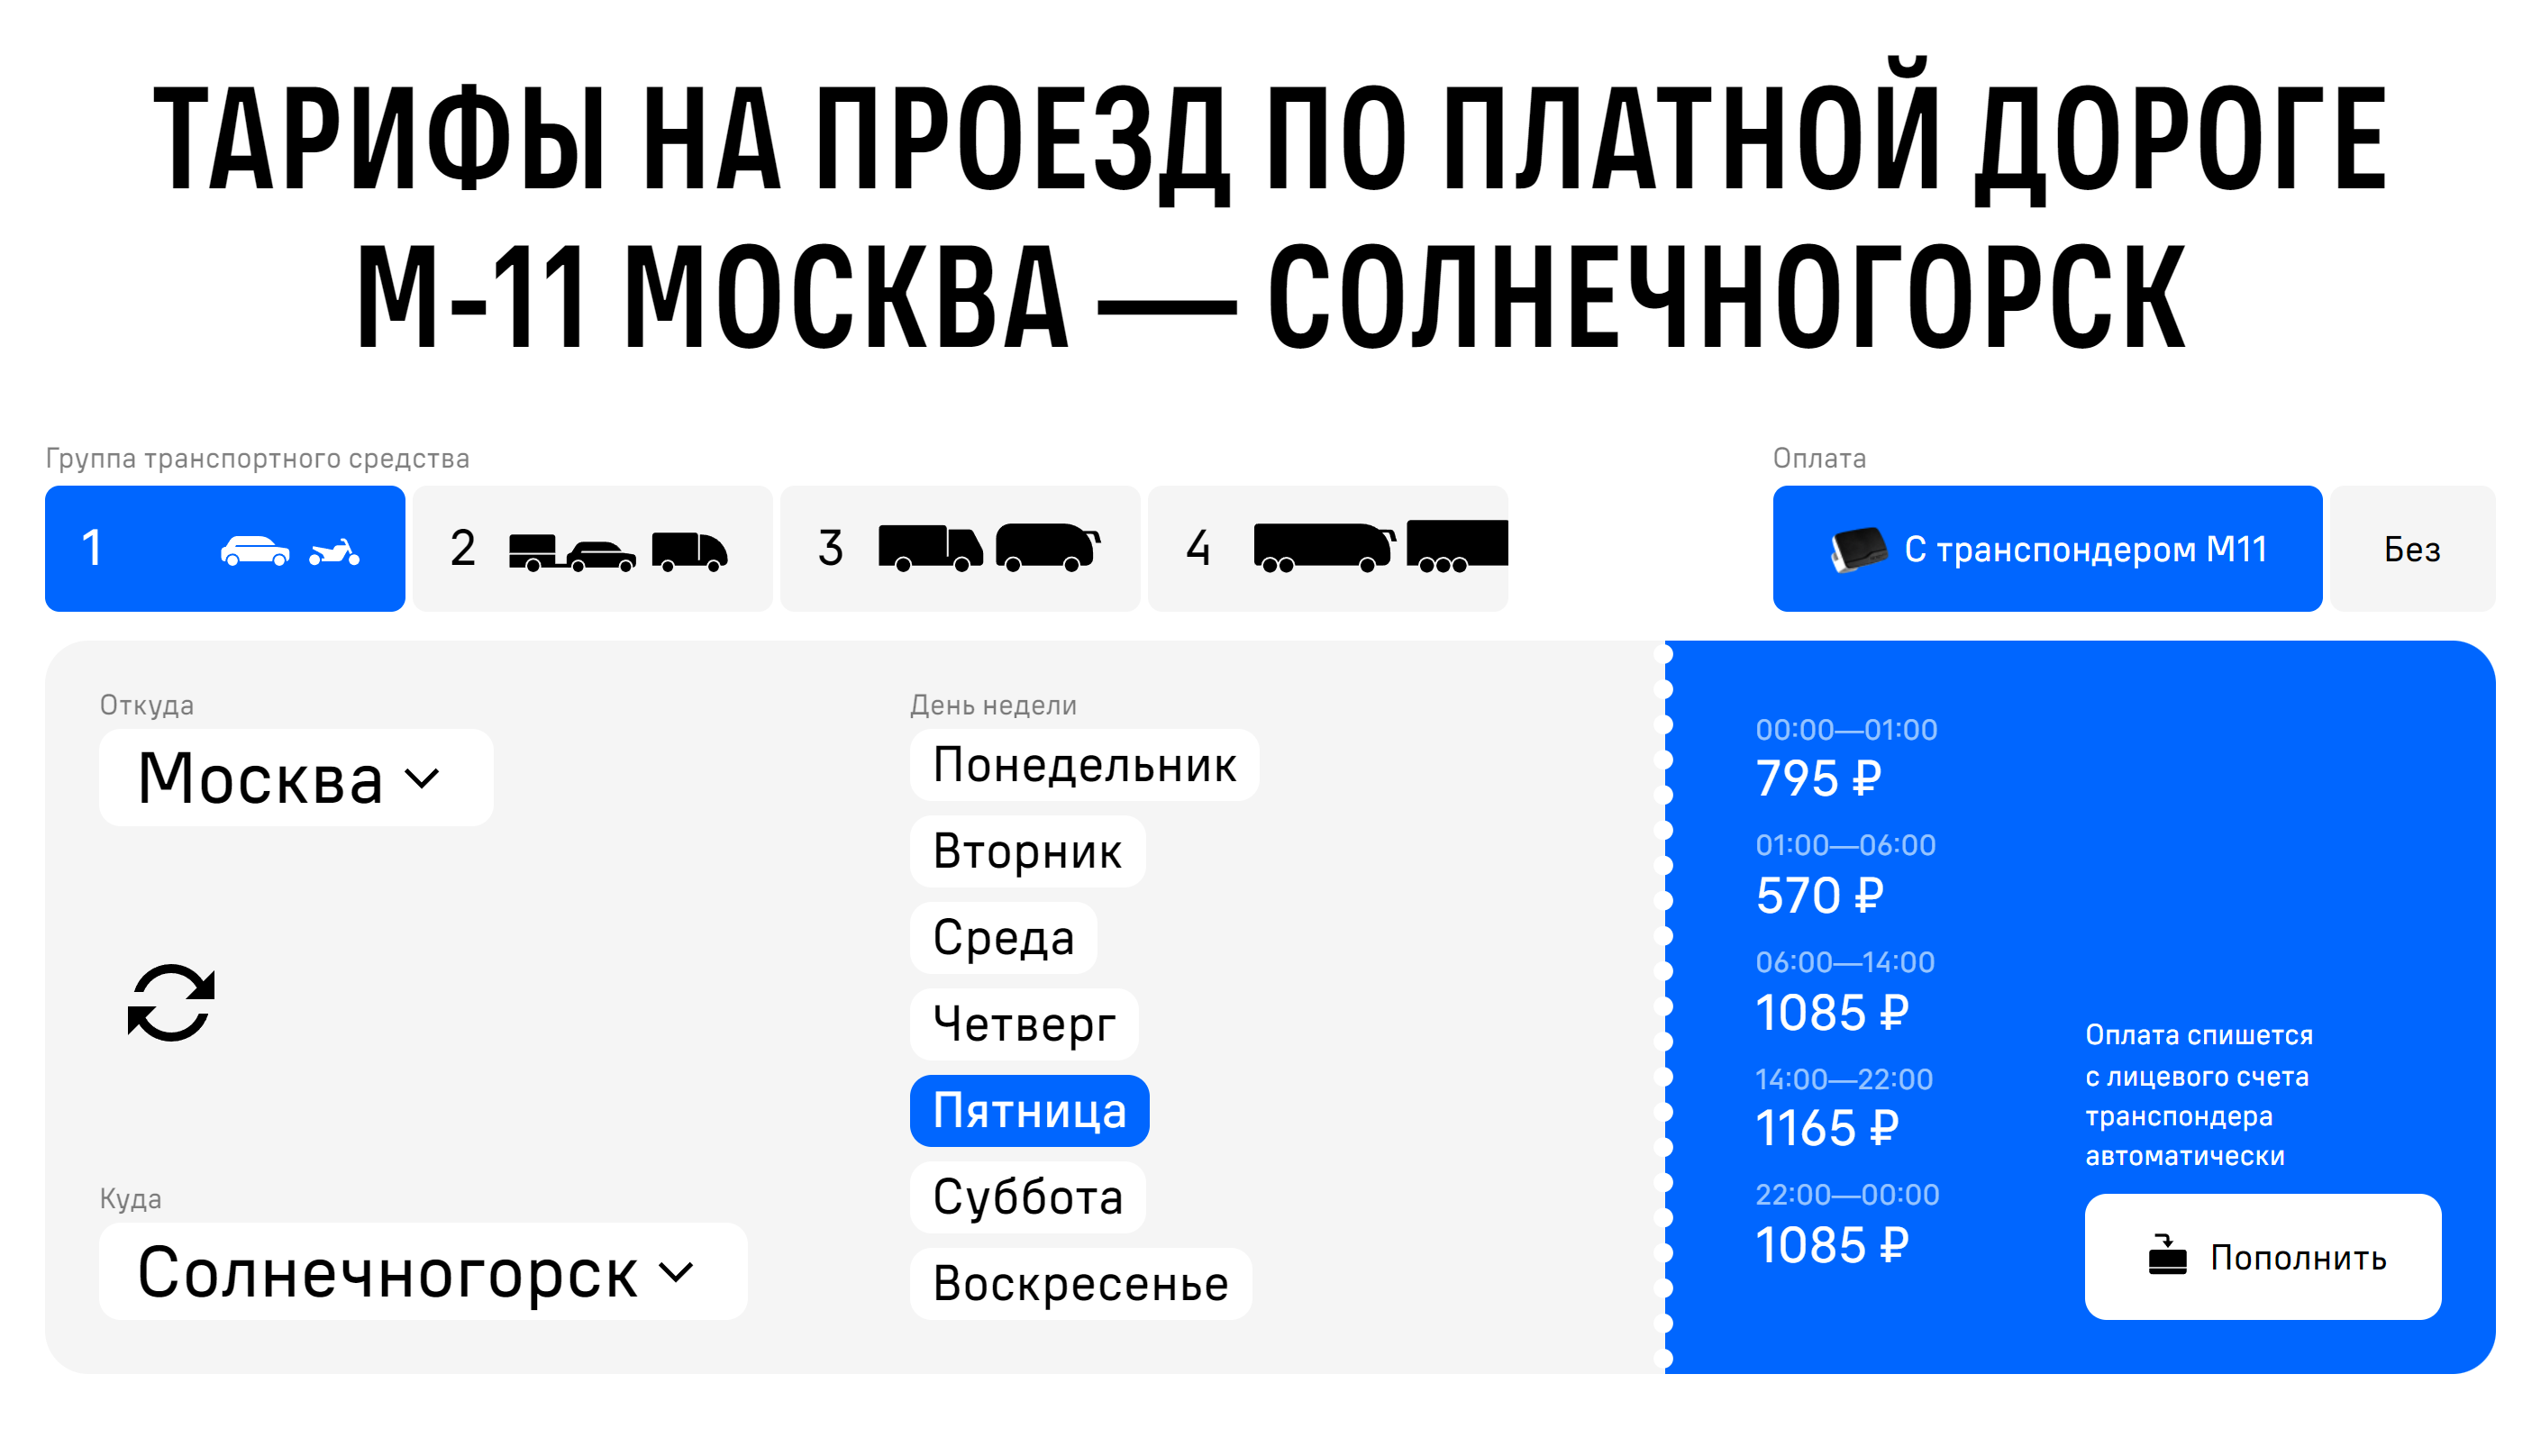 С транспондером проезд по участку Москва — Солнечногорск с 01:00 до 06:00 стоит еще дешевле — 570 вместо 680 ₽. Источник: m11-neva.ru